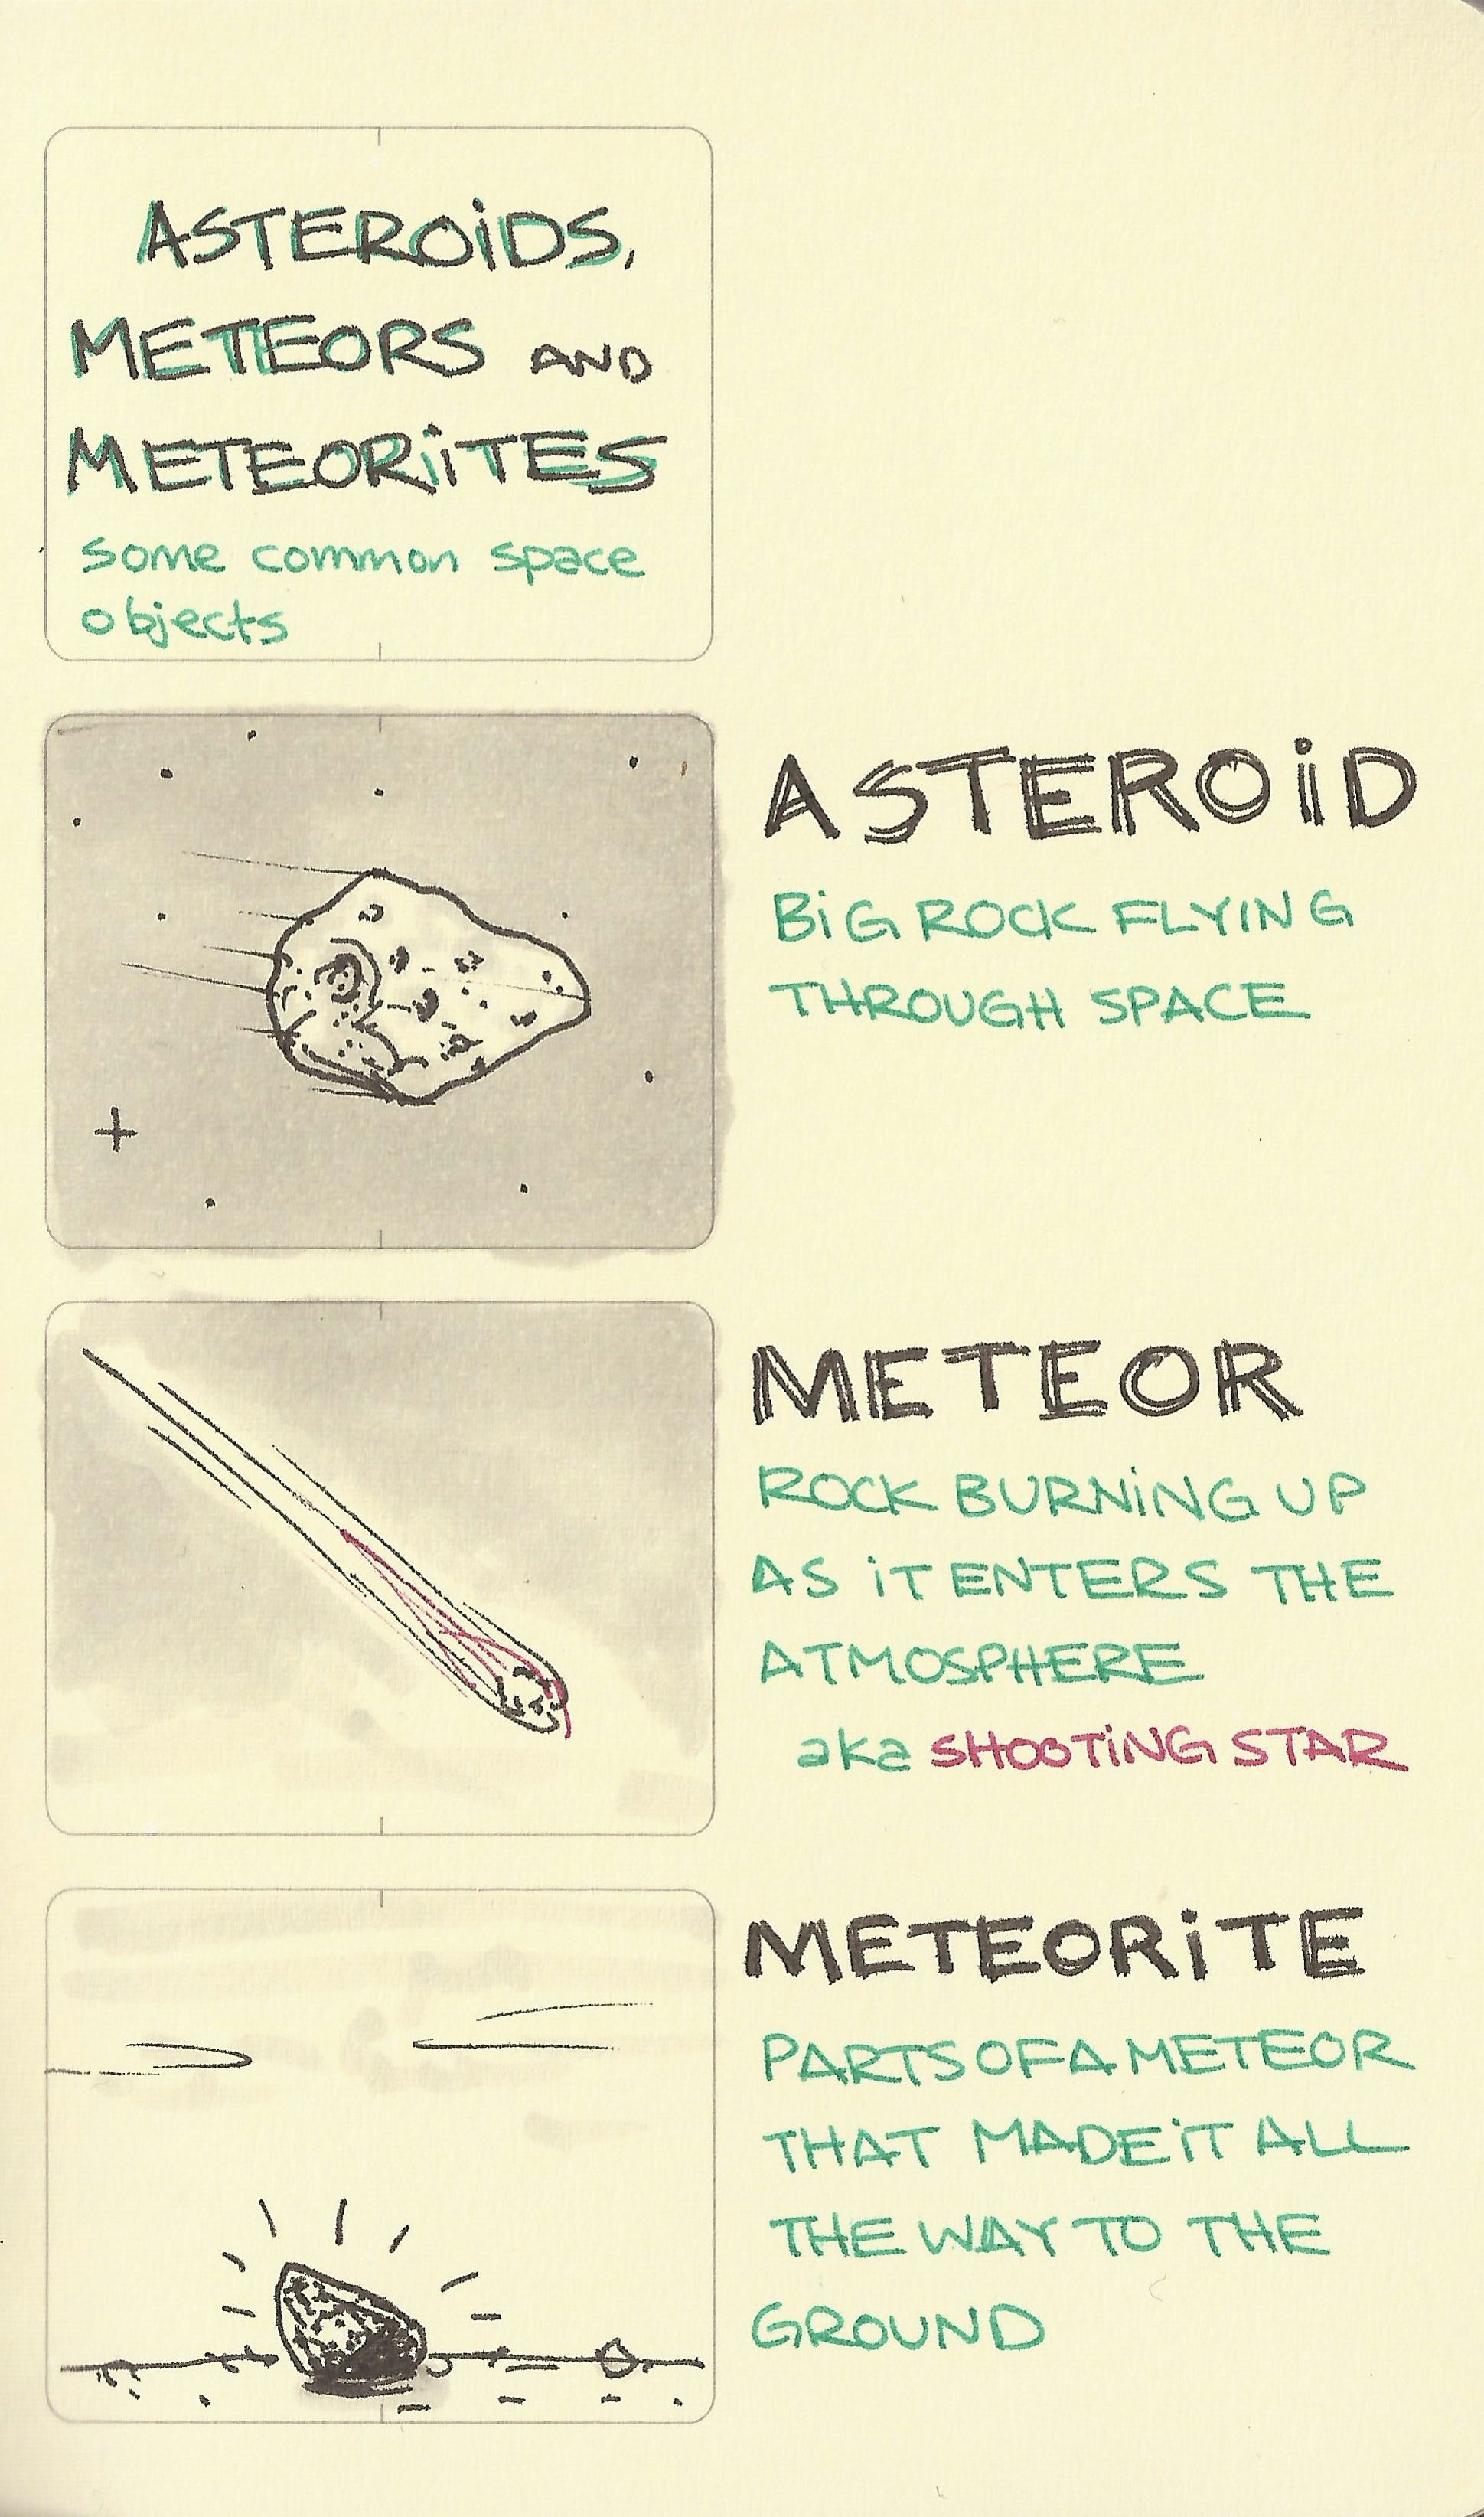 Asteroids, meteors and meteorites - Sketchplanations